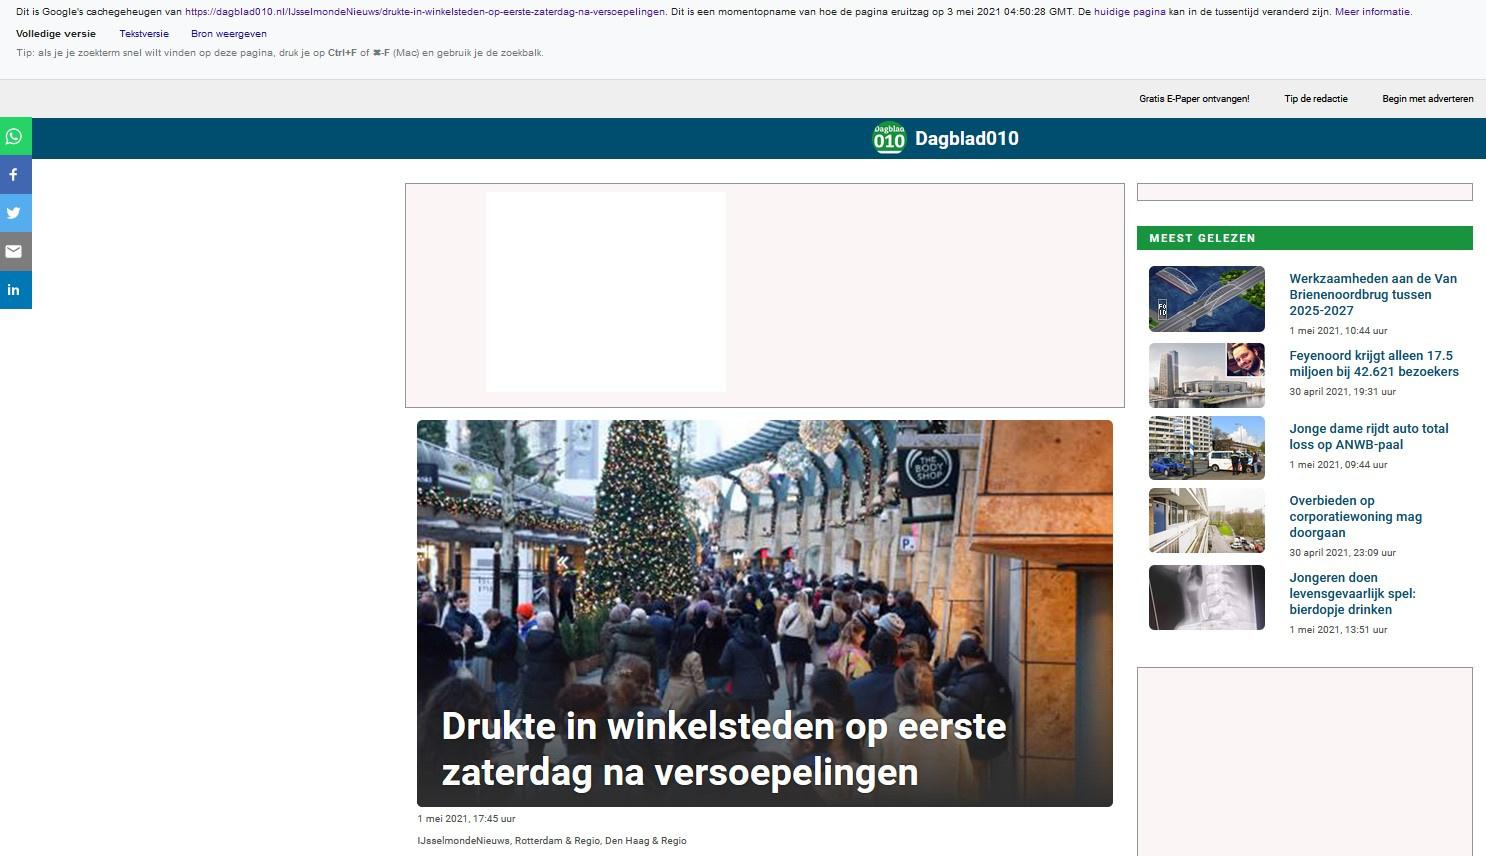 Factcheck: ja, lokale krant plaatste foto met kerstboom bij artikel over drukte op 1 mei